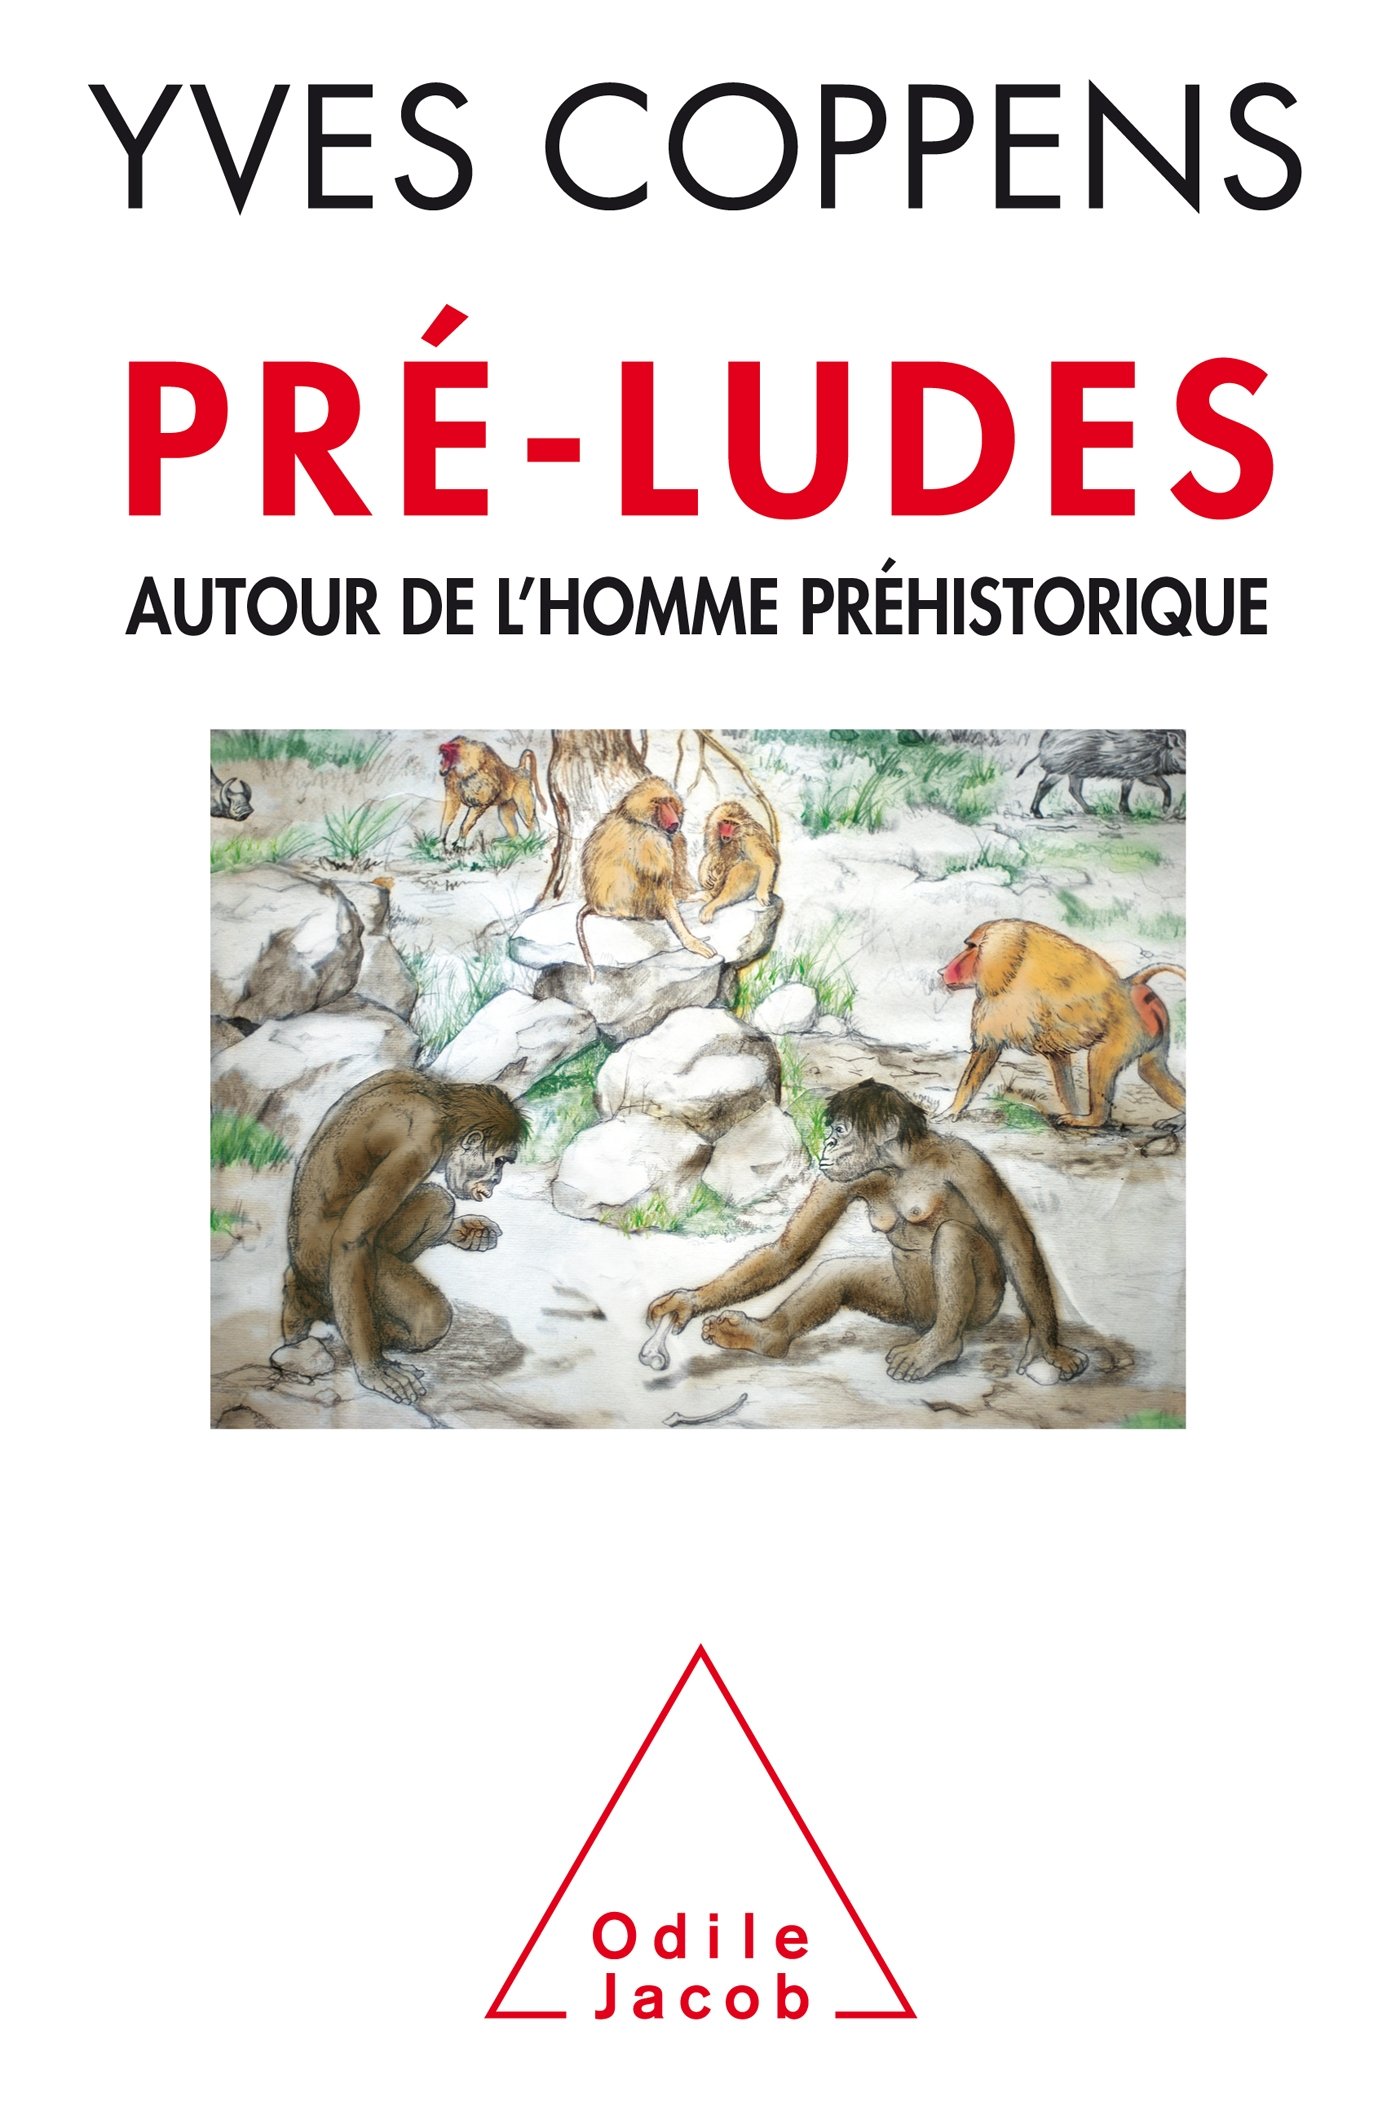 Pré-ludes. Autour de l'homme préhistorique, 2014, 416 p.